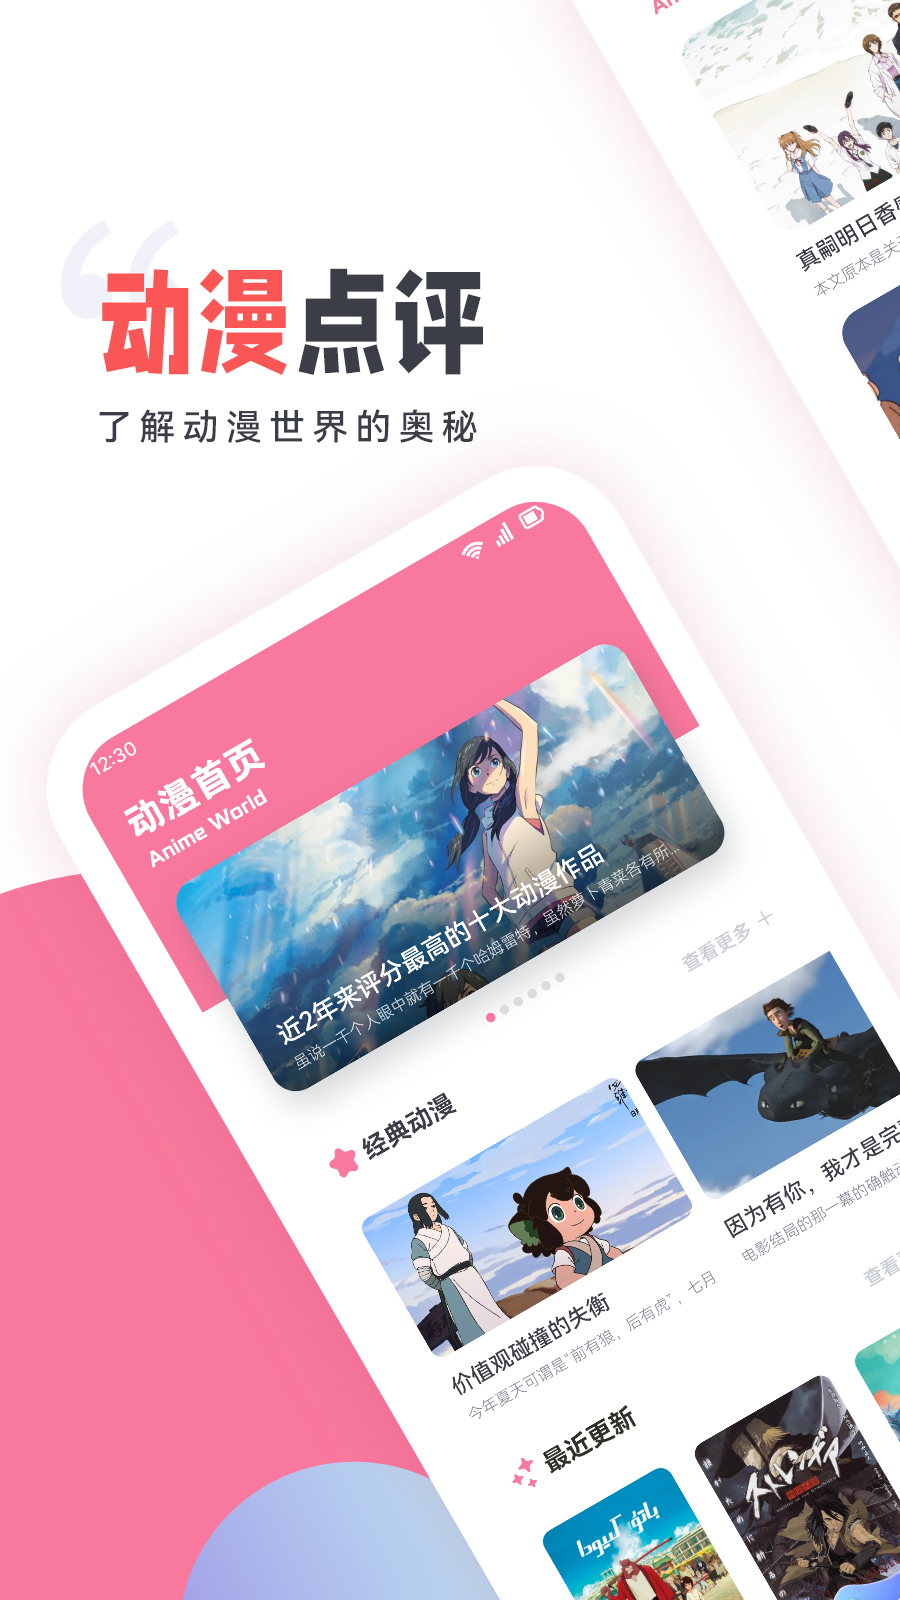 嘀嘀动漫盒子app下载,嘀嘀动漫盒子app最新版 v1.1